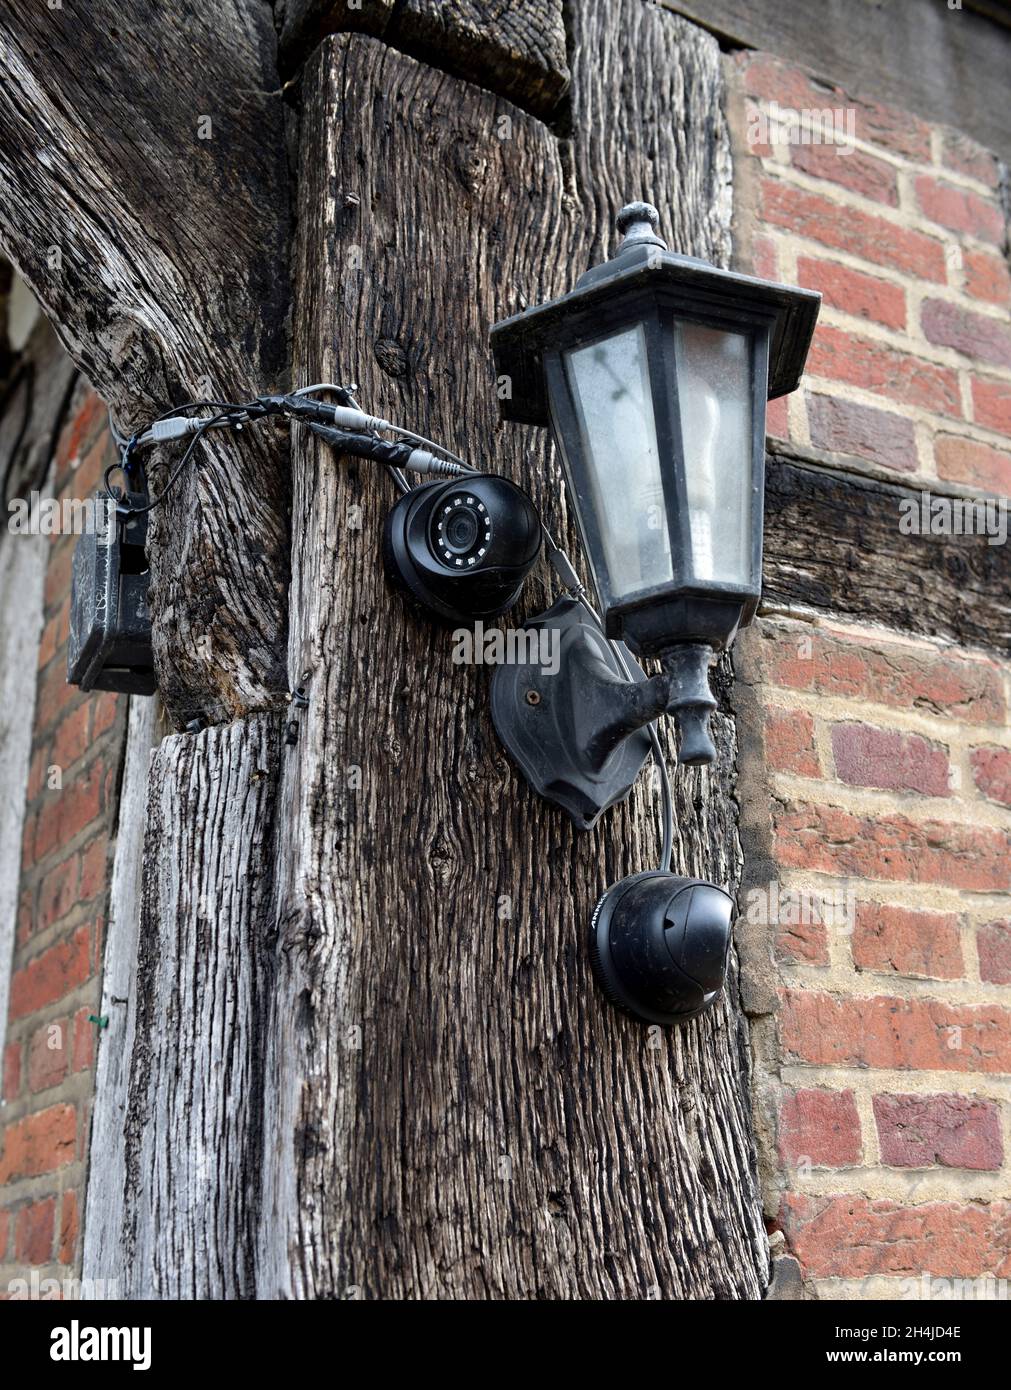 Deux caméras de sécurité extérieures et une applique murale montées sur un ancien cadre en bois de bâtiment traditionnel, Royaume-Uni Banque D'Images